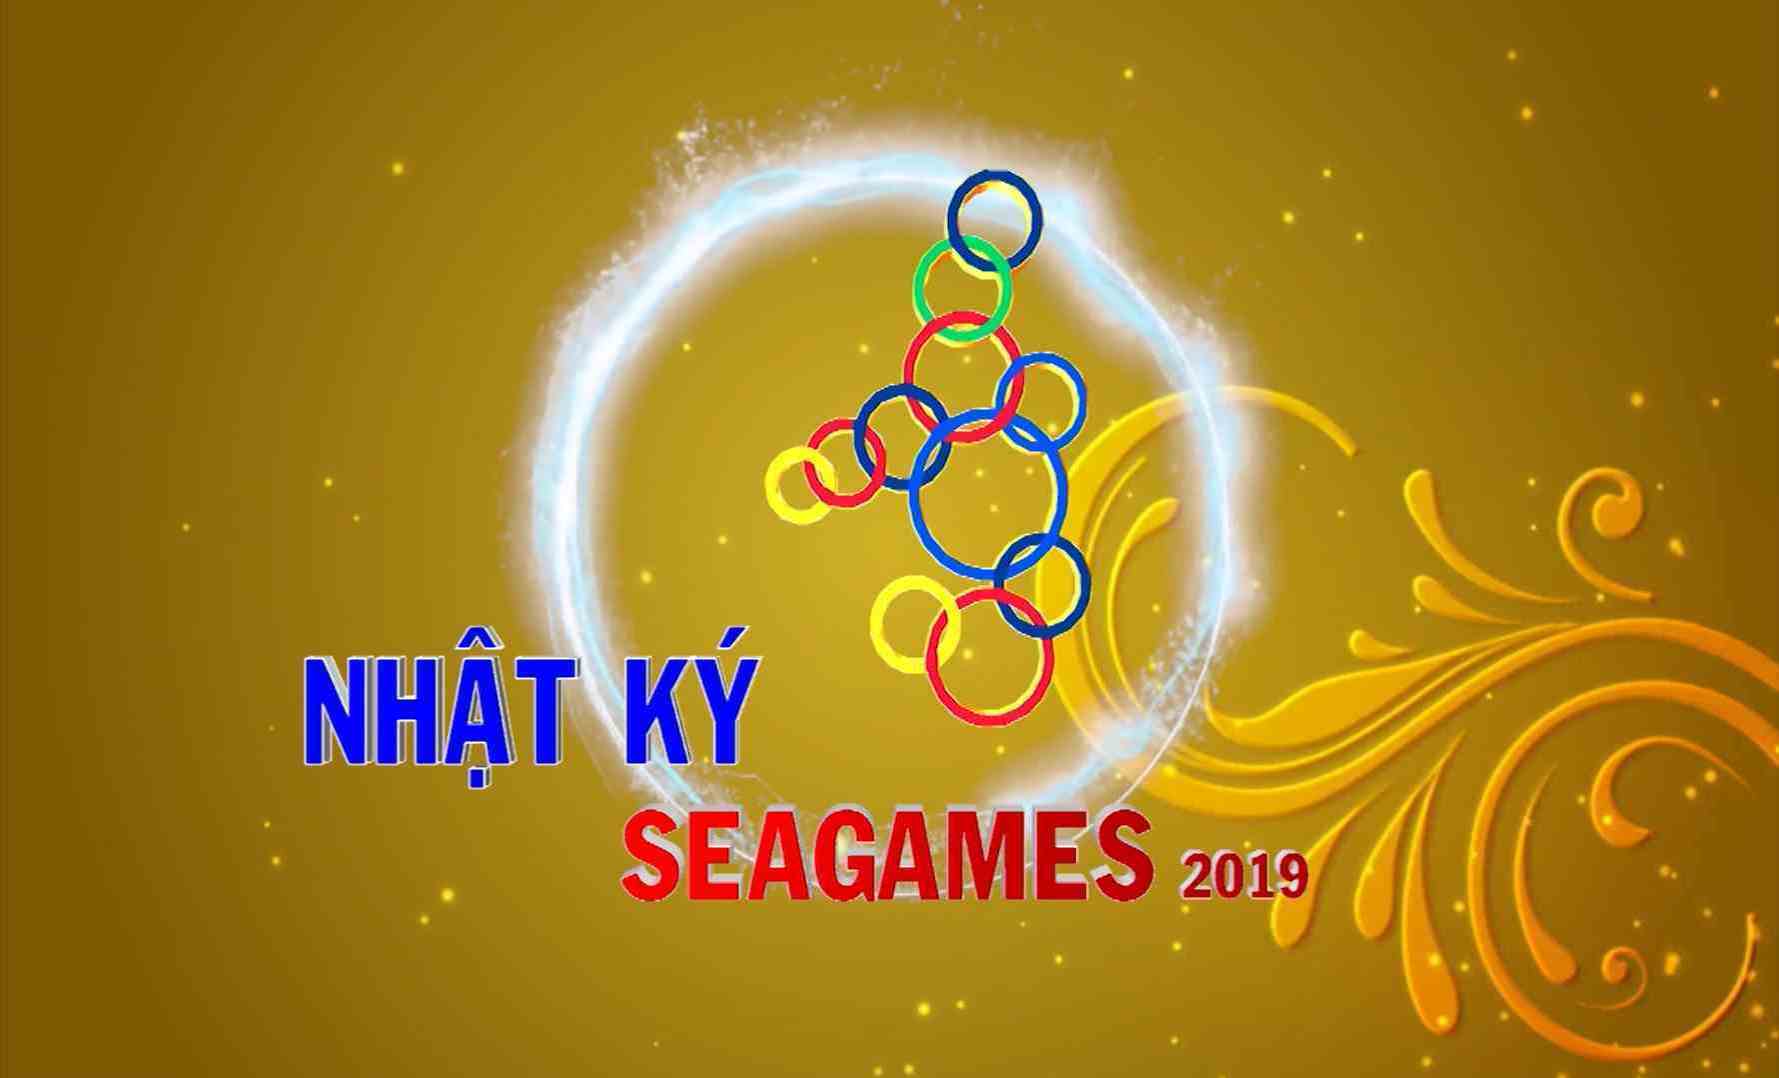 [Video] Nhật ký SEA Games 30 sáng (08-12-2019)